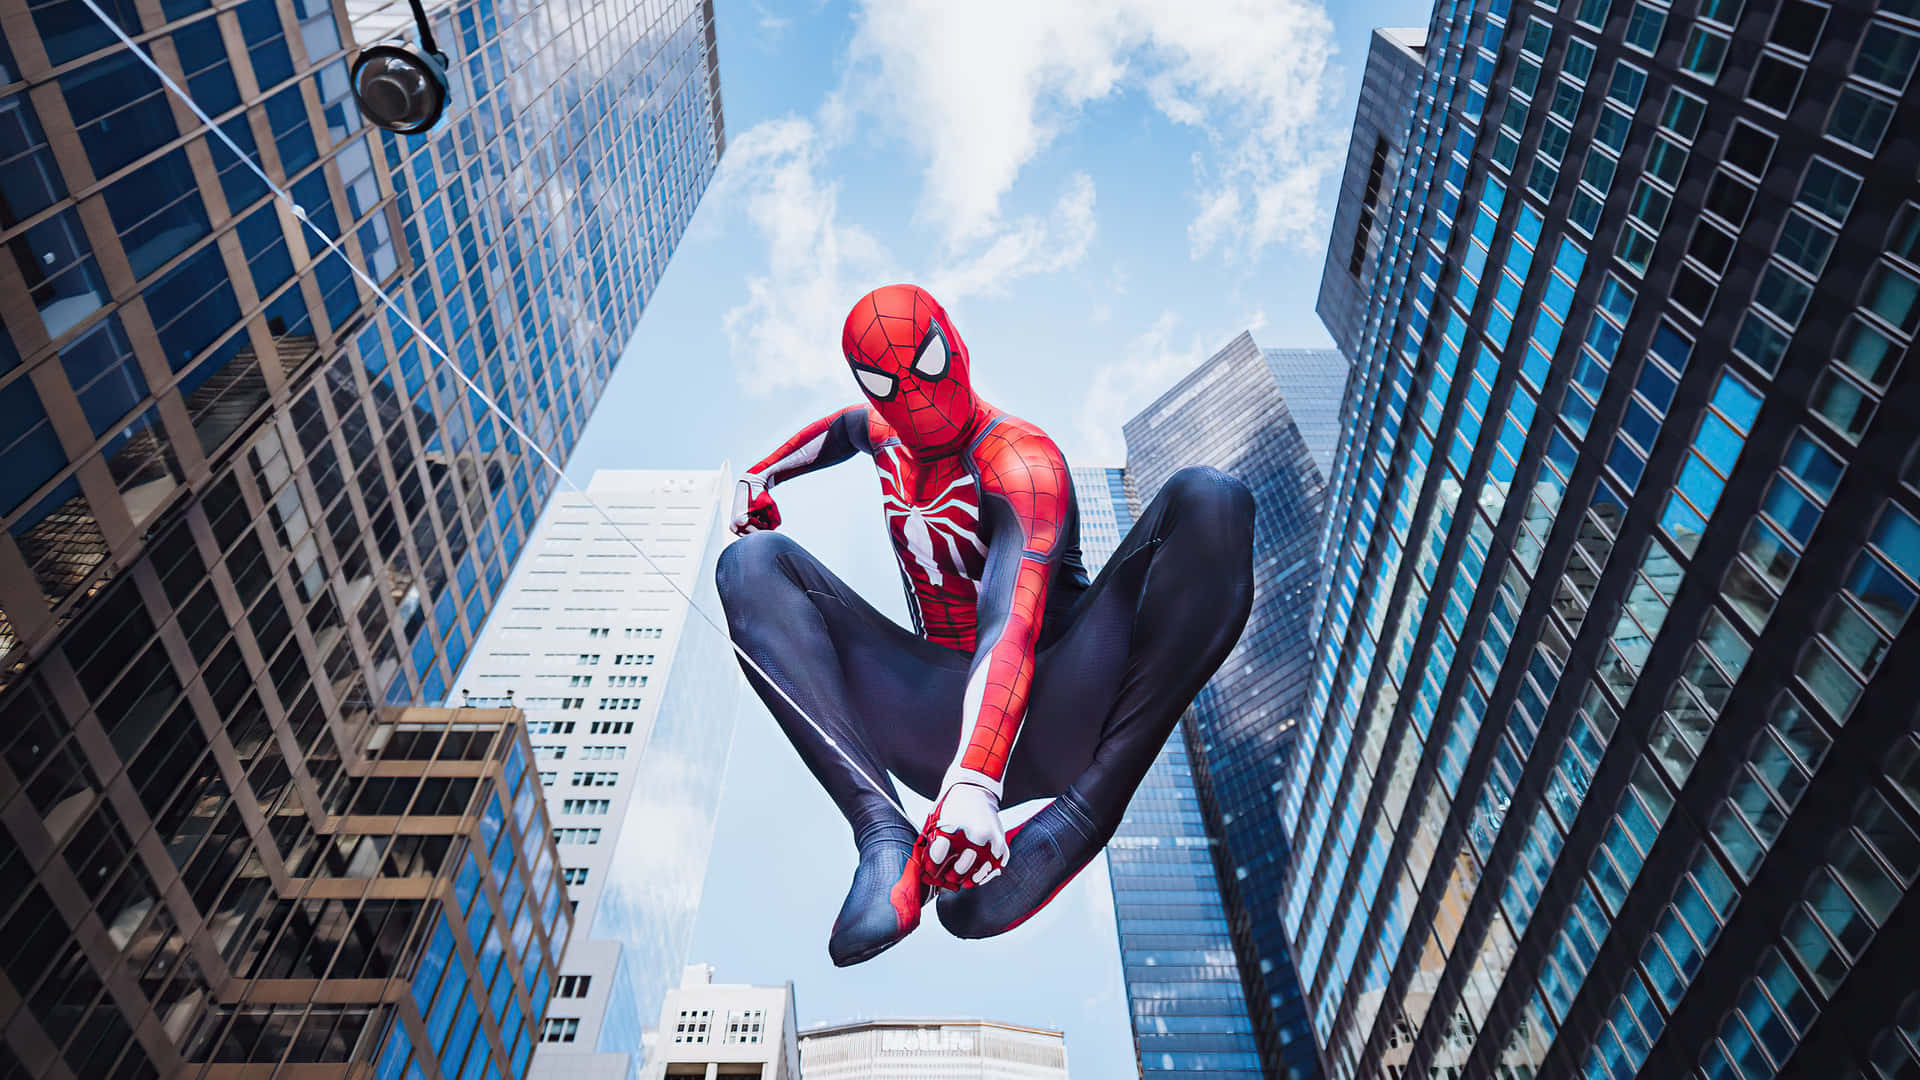 Coolehintergrundbilder Von Spiderman, Dem Beliebten Marvel-superhelden.